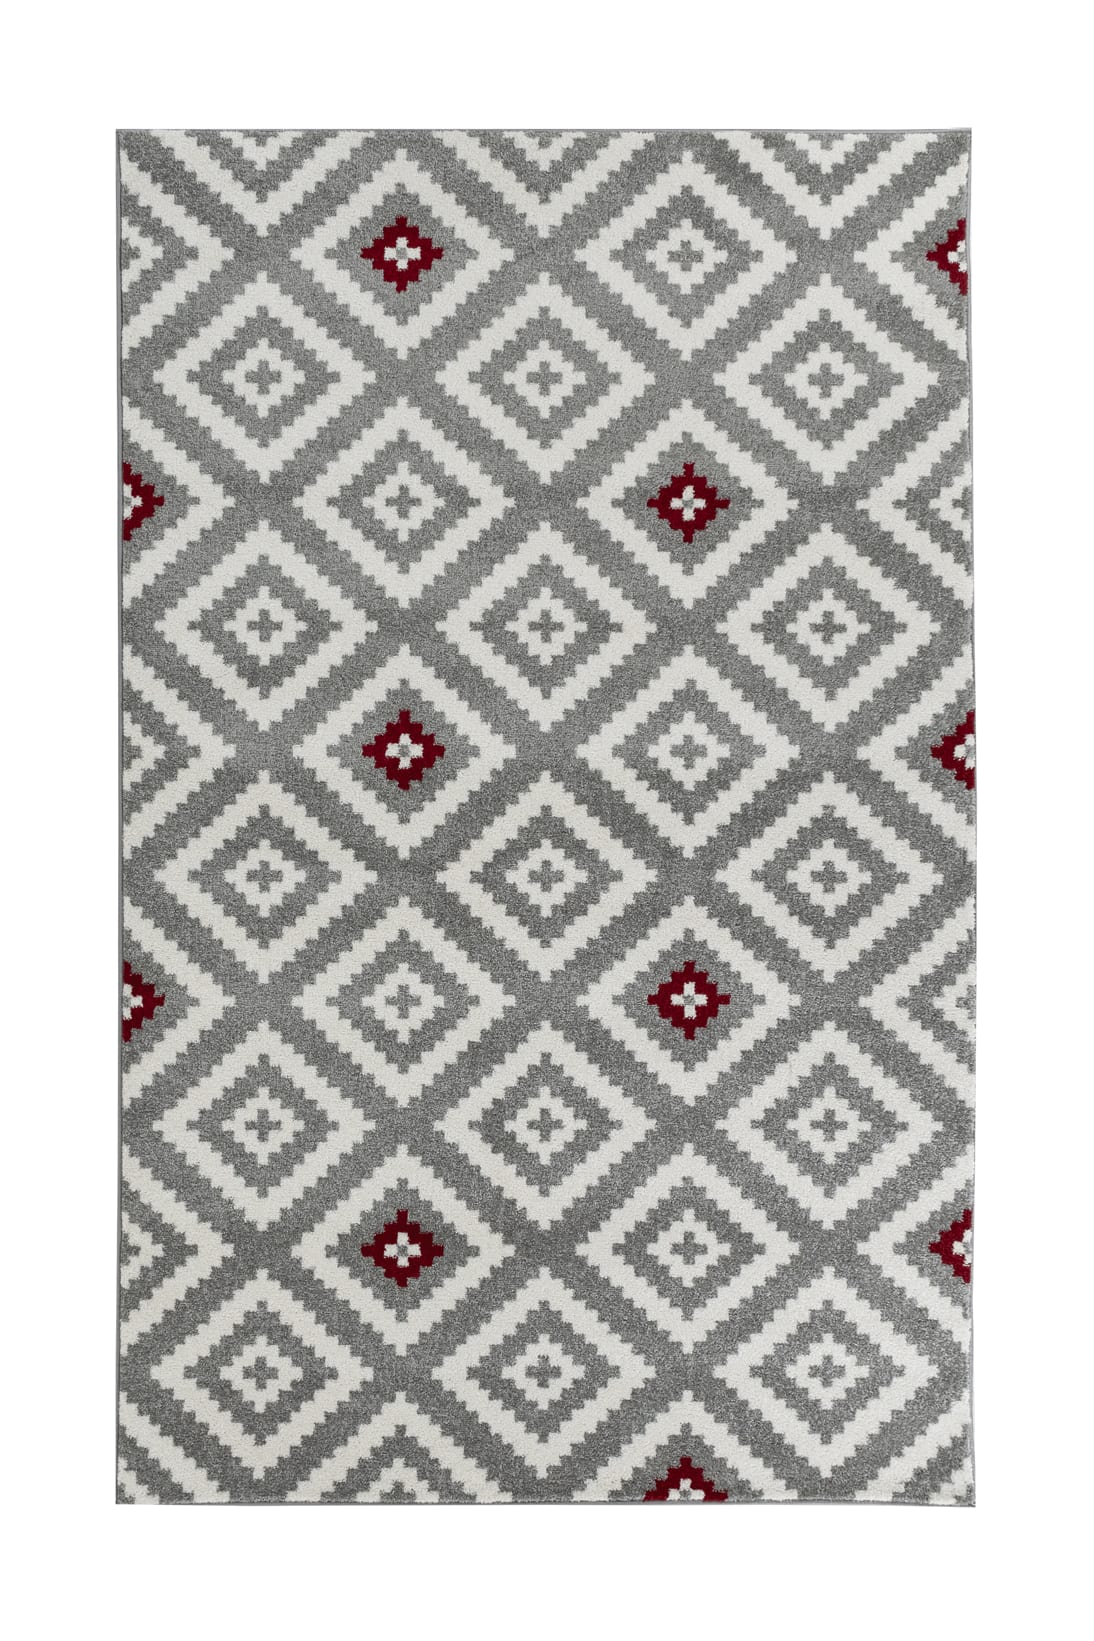 Tapis salon motif géométrique rouge - 120x160